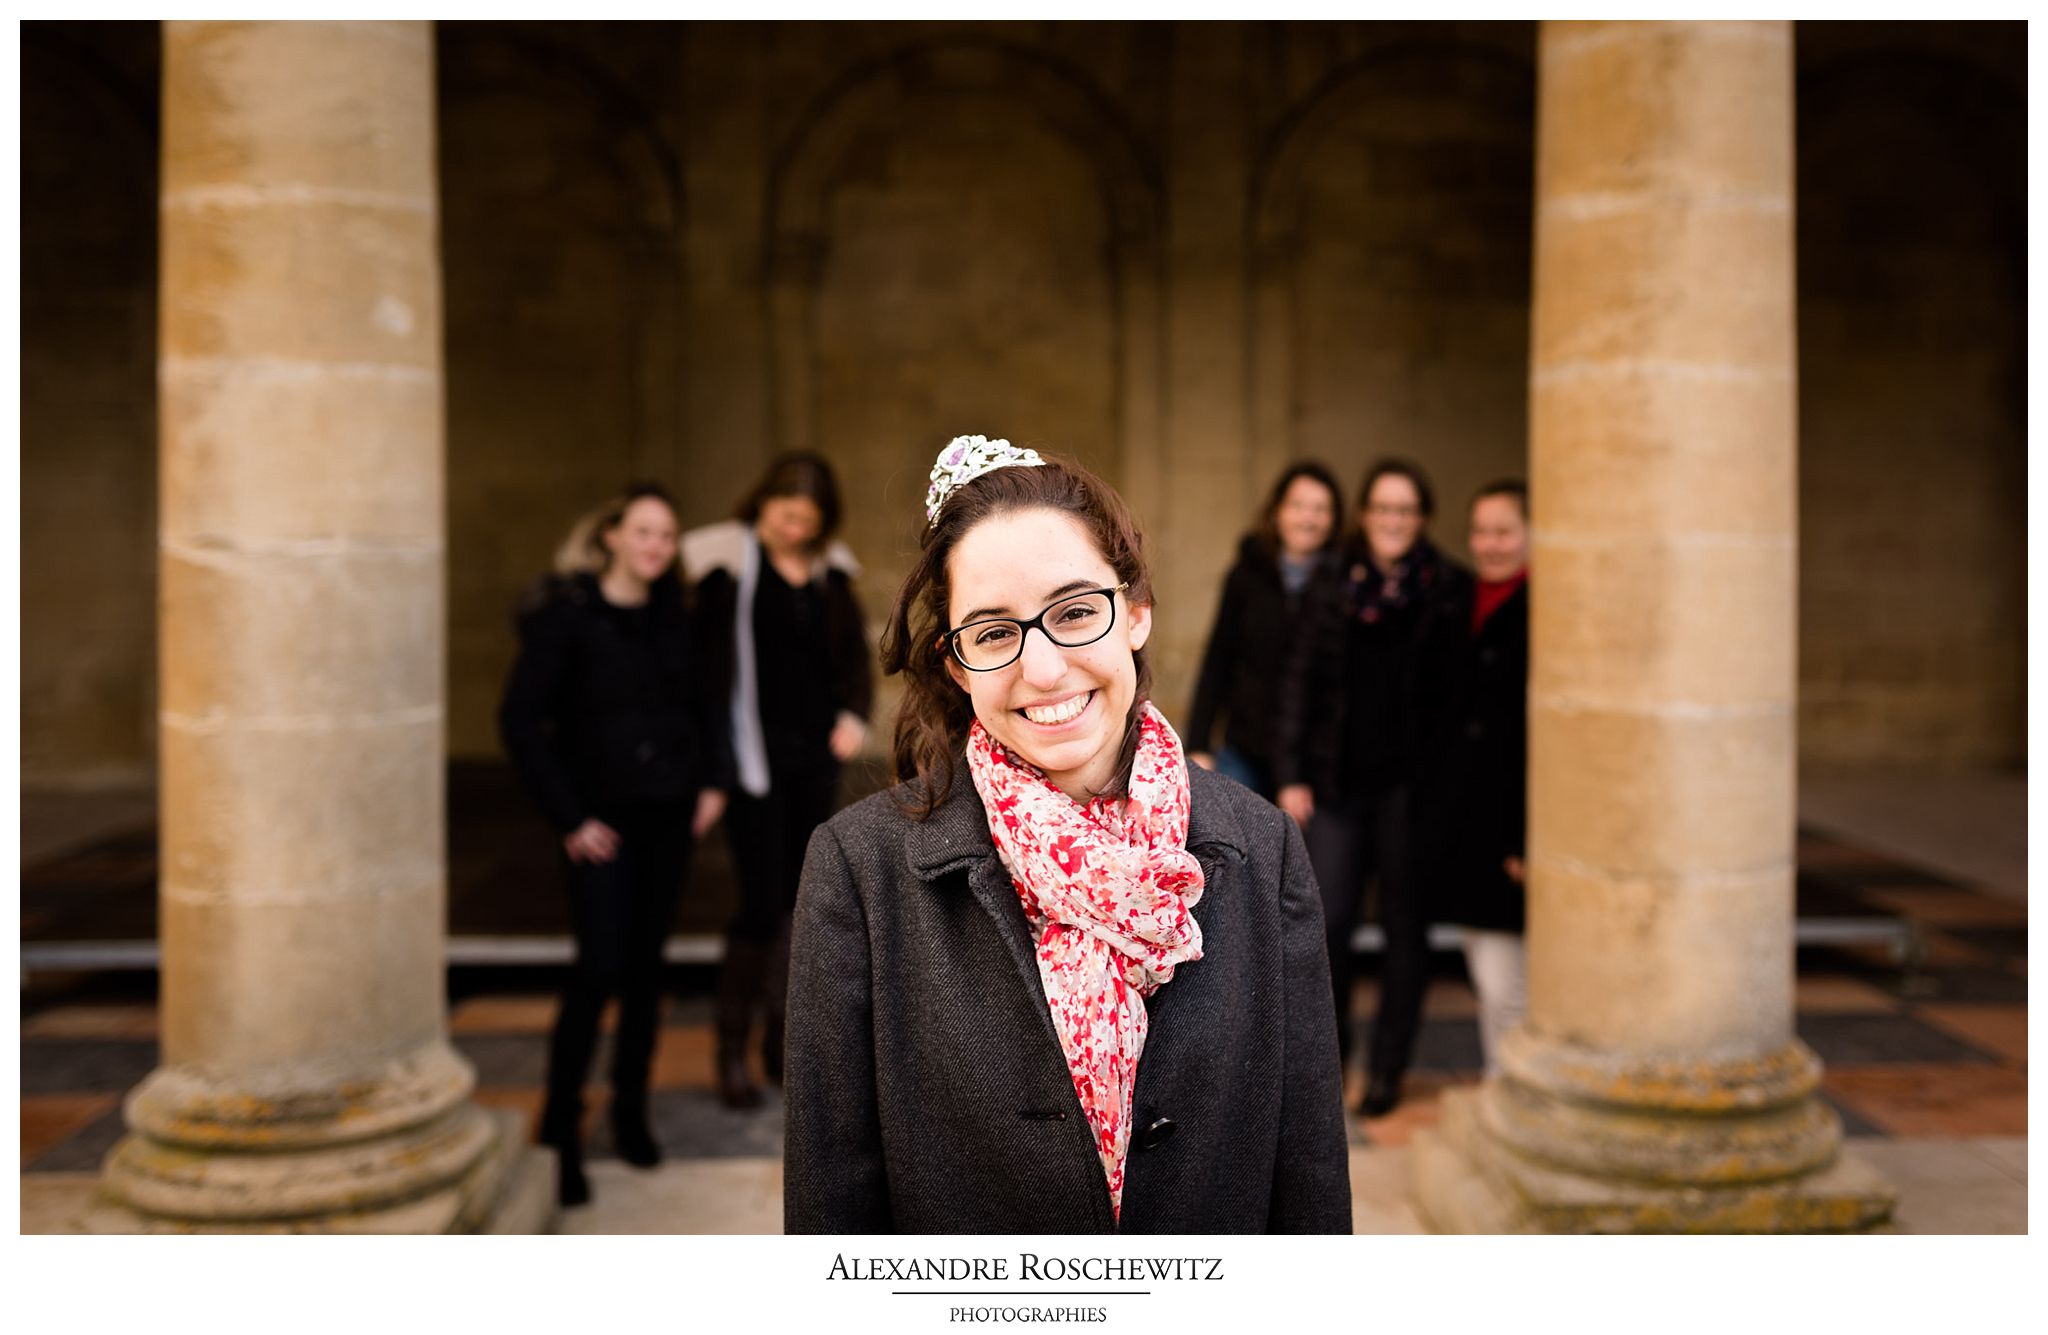 Le résumé complet de la séance photo EVFJ de Christelle à Bordeaux, avec 5 de ses amies, avant son mariage en juin. Alexandre Roschewitz Photographies.